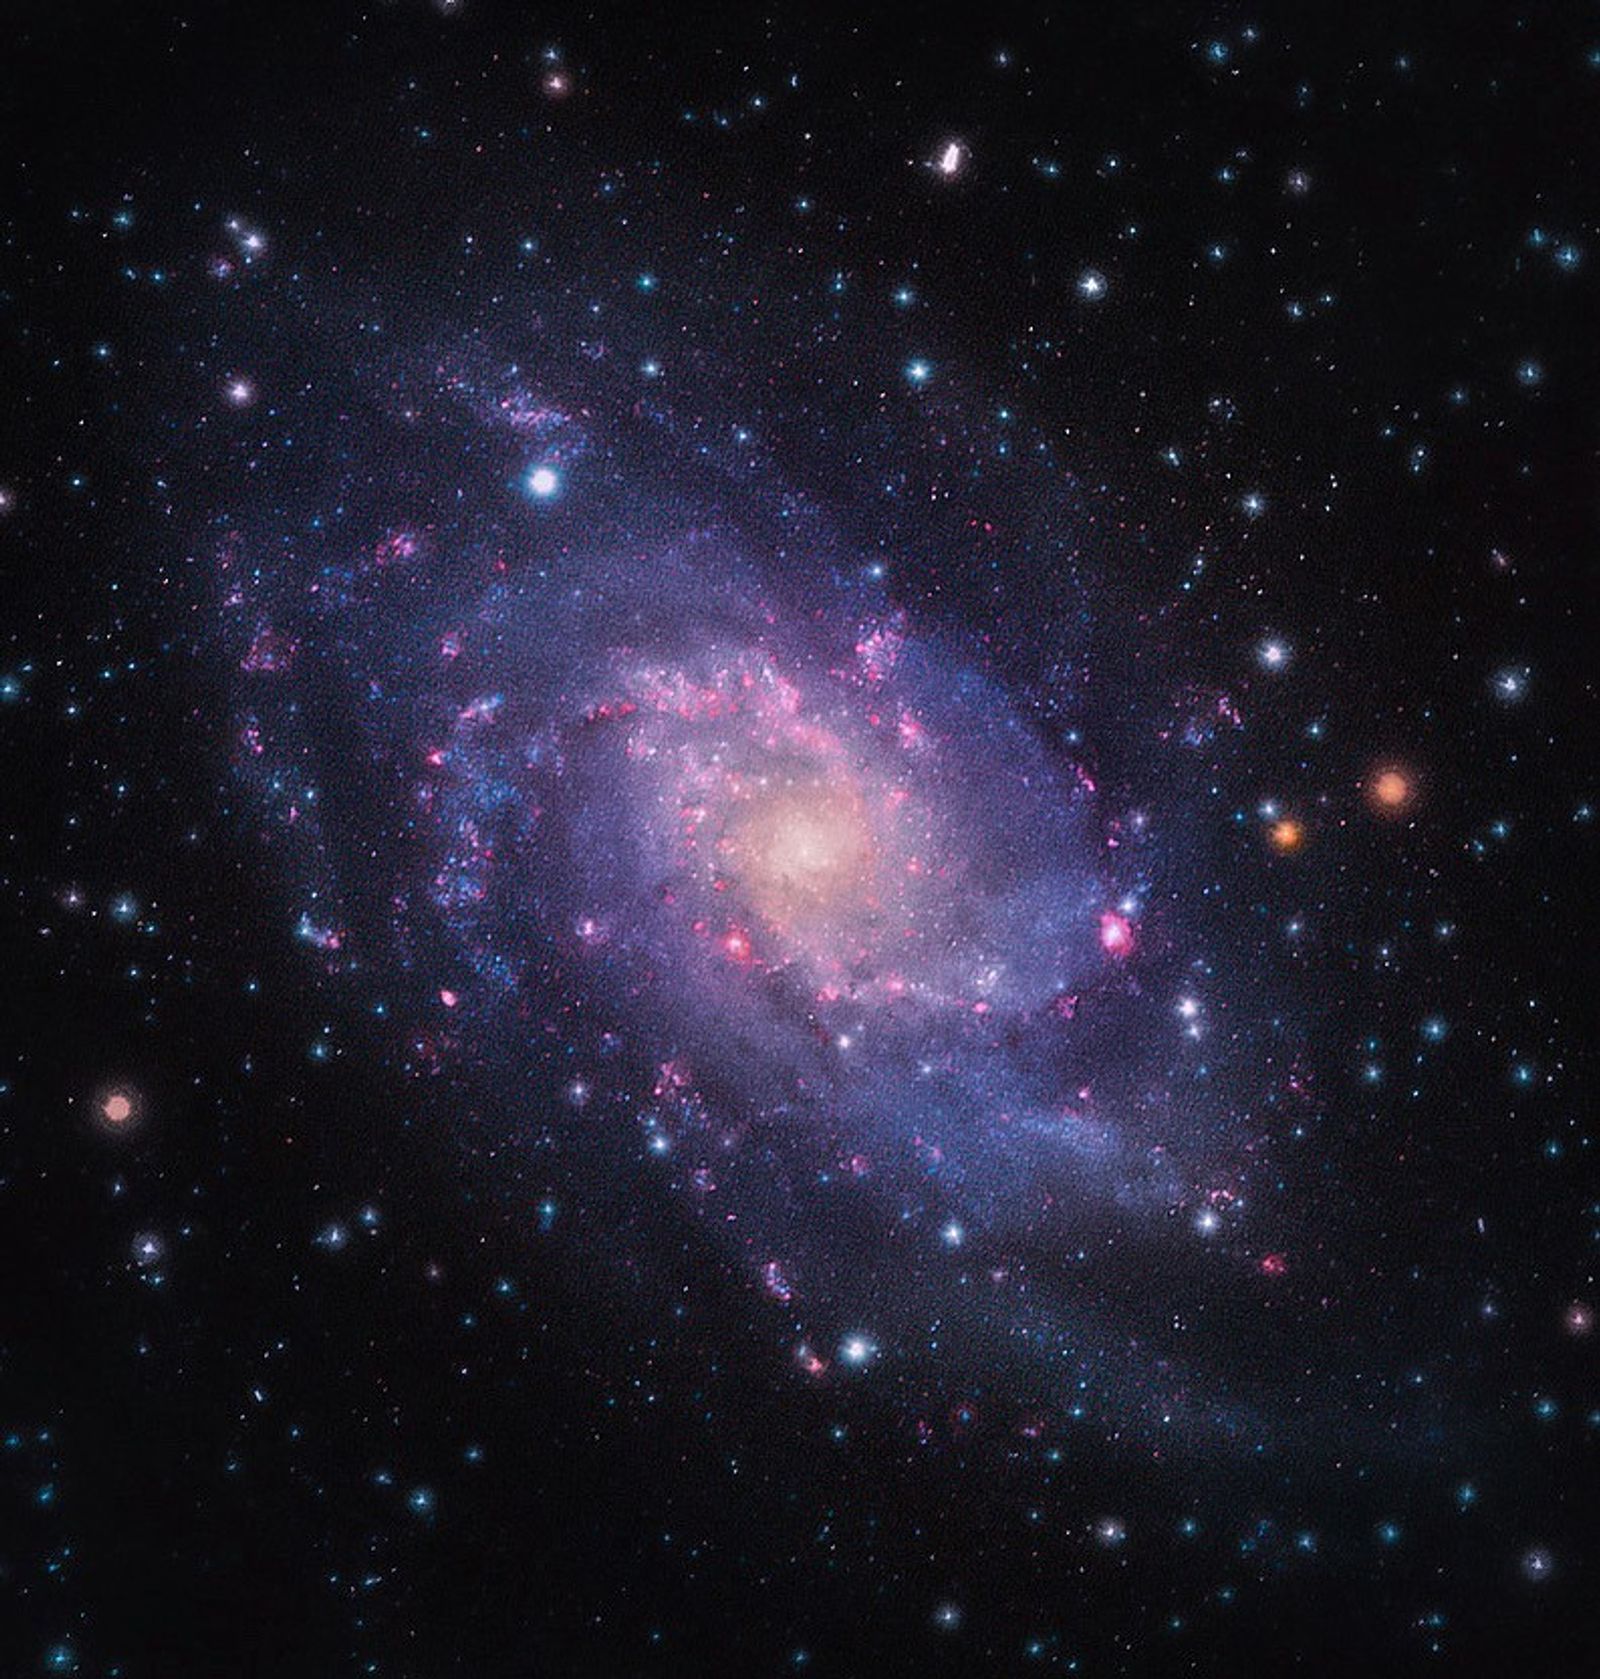 Kolmion galaksi, joka on kierteisgalaksina kierteen muotoinen. Se on väriltään violetti ja sininen, keskikohdastaan kellertävä